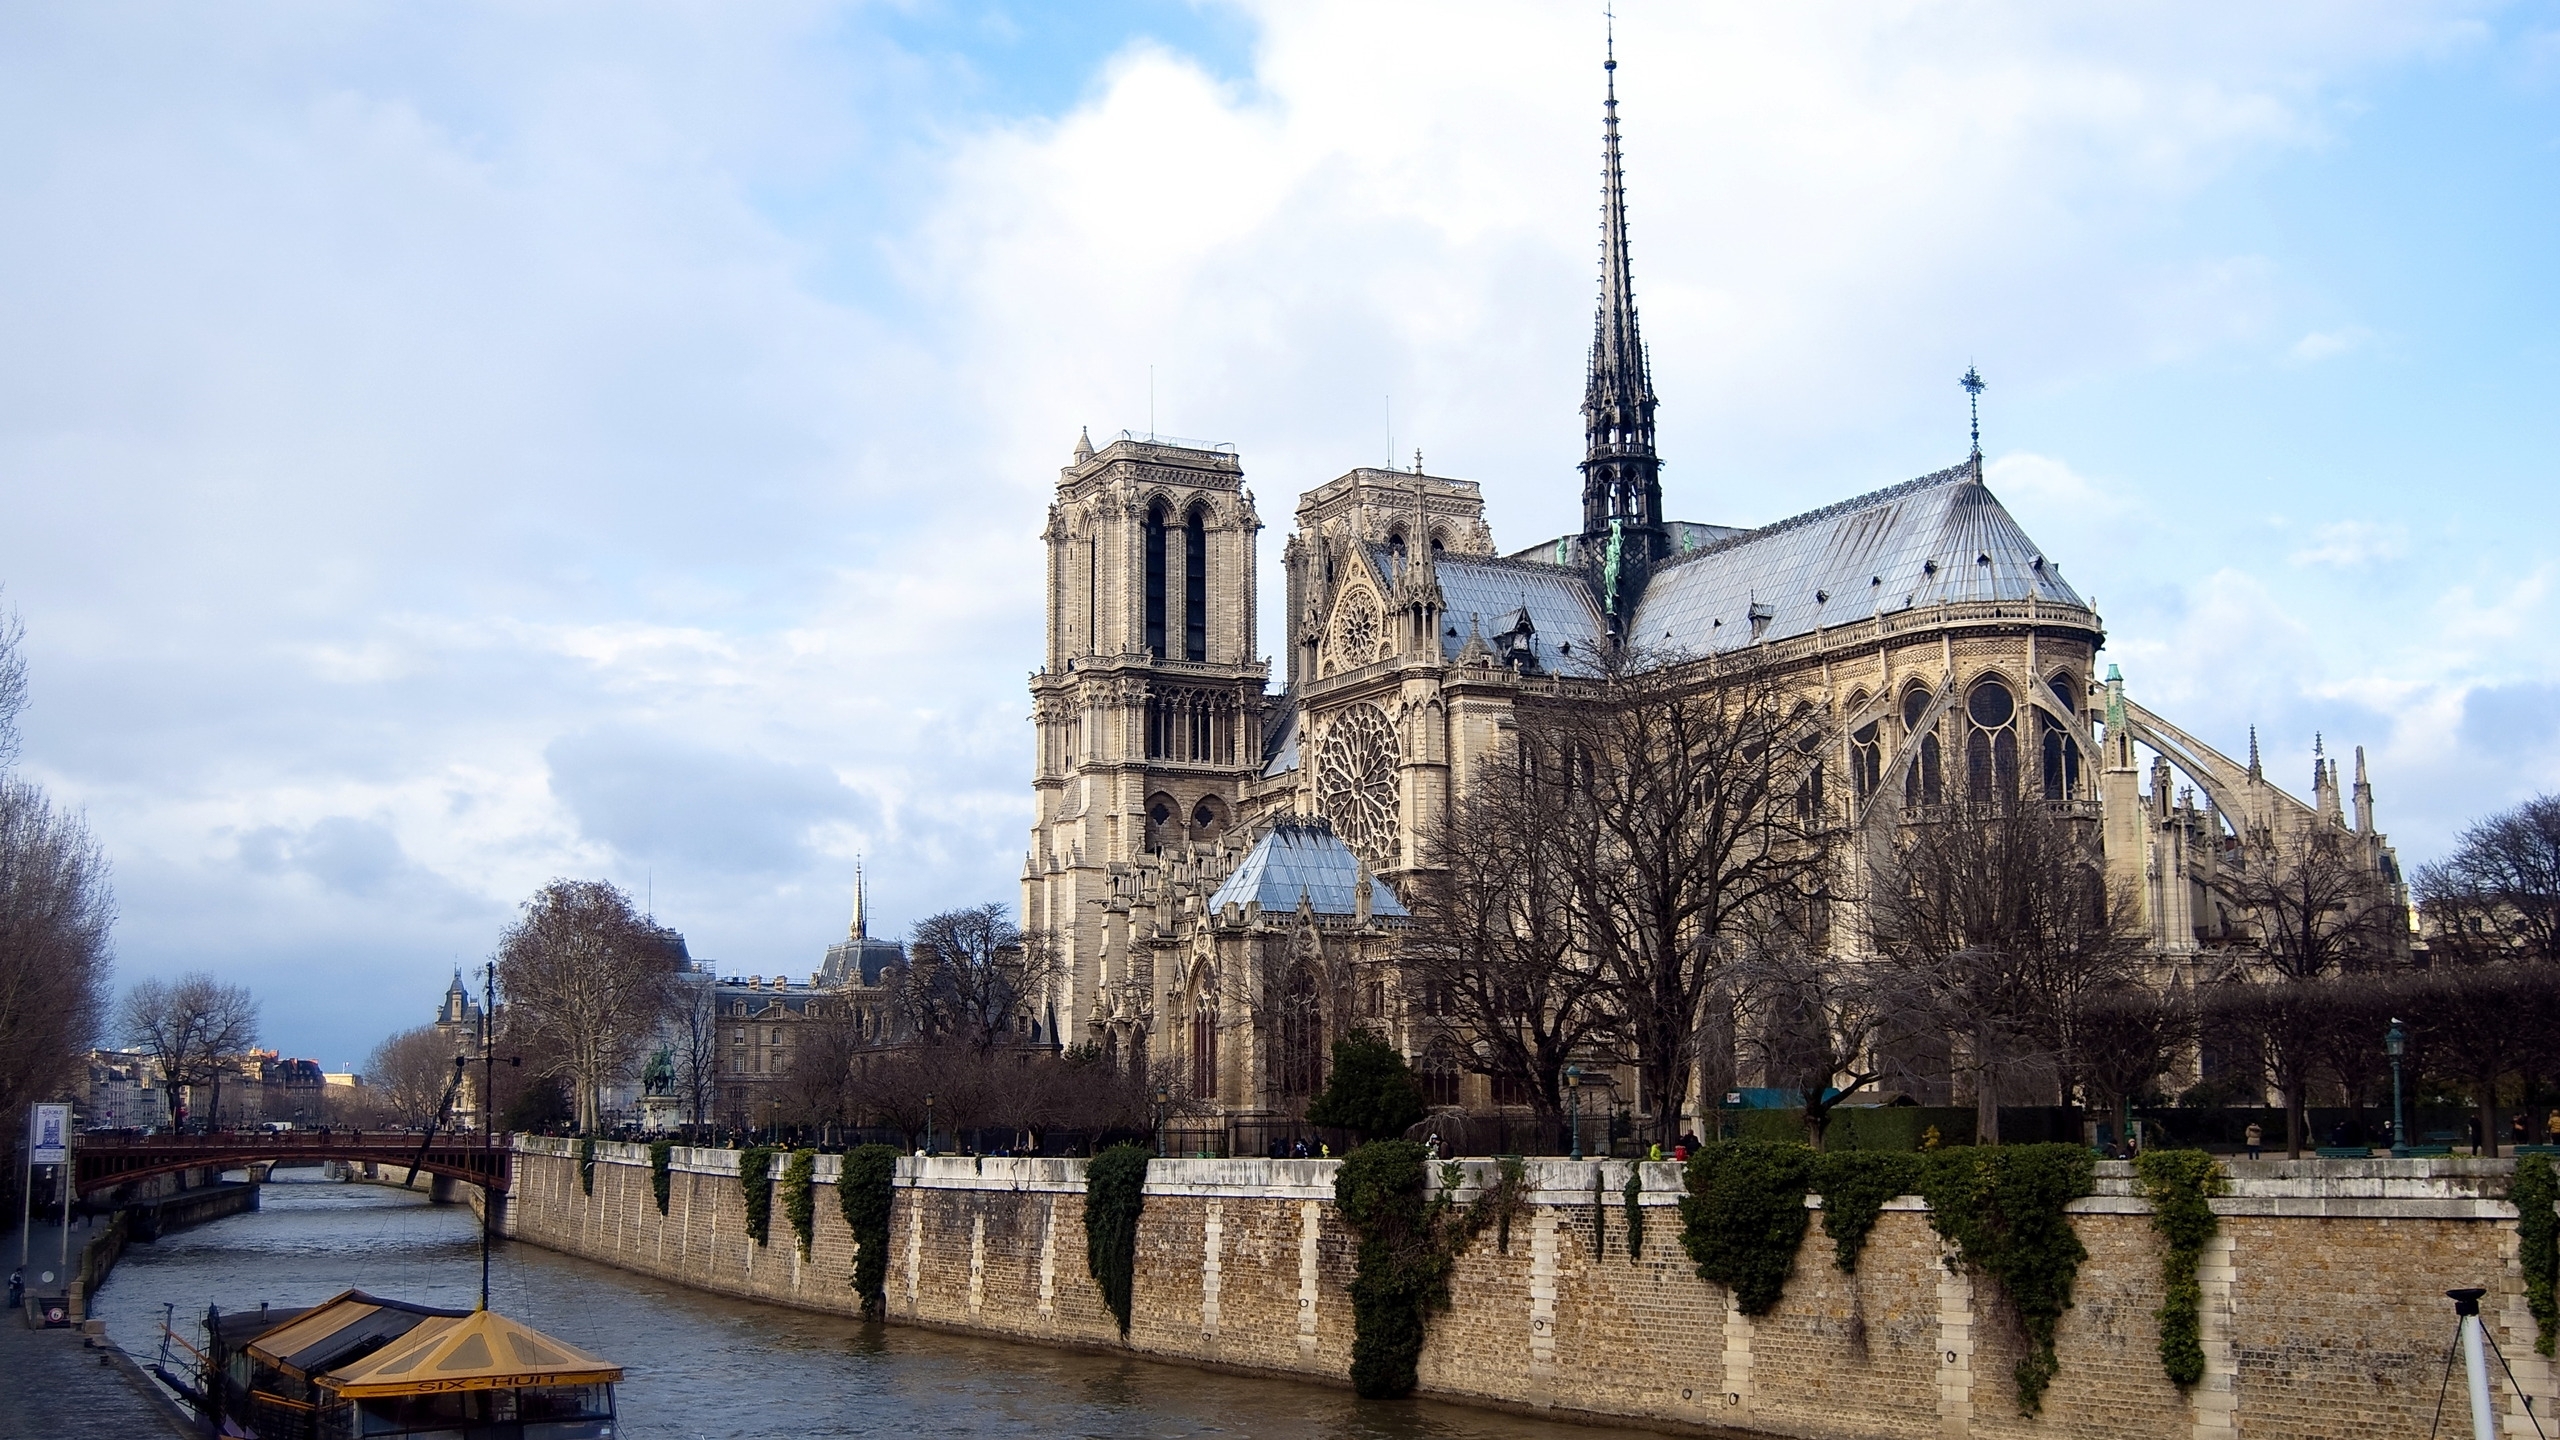 巴黎圣母院:哥特式建筑的旷世杰作,是古老巴黎的象征